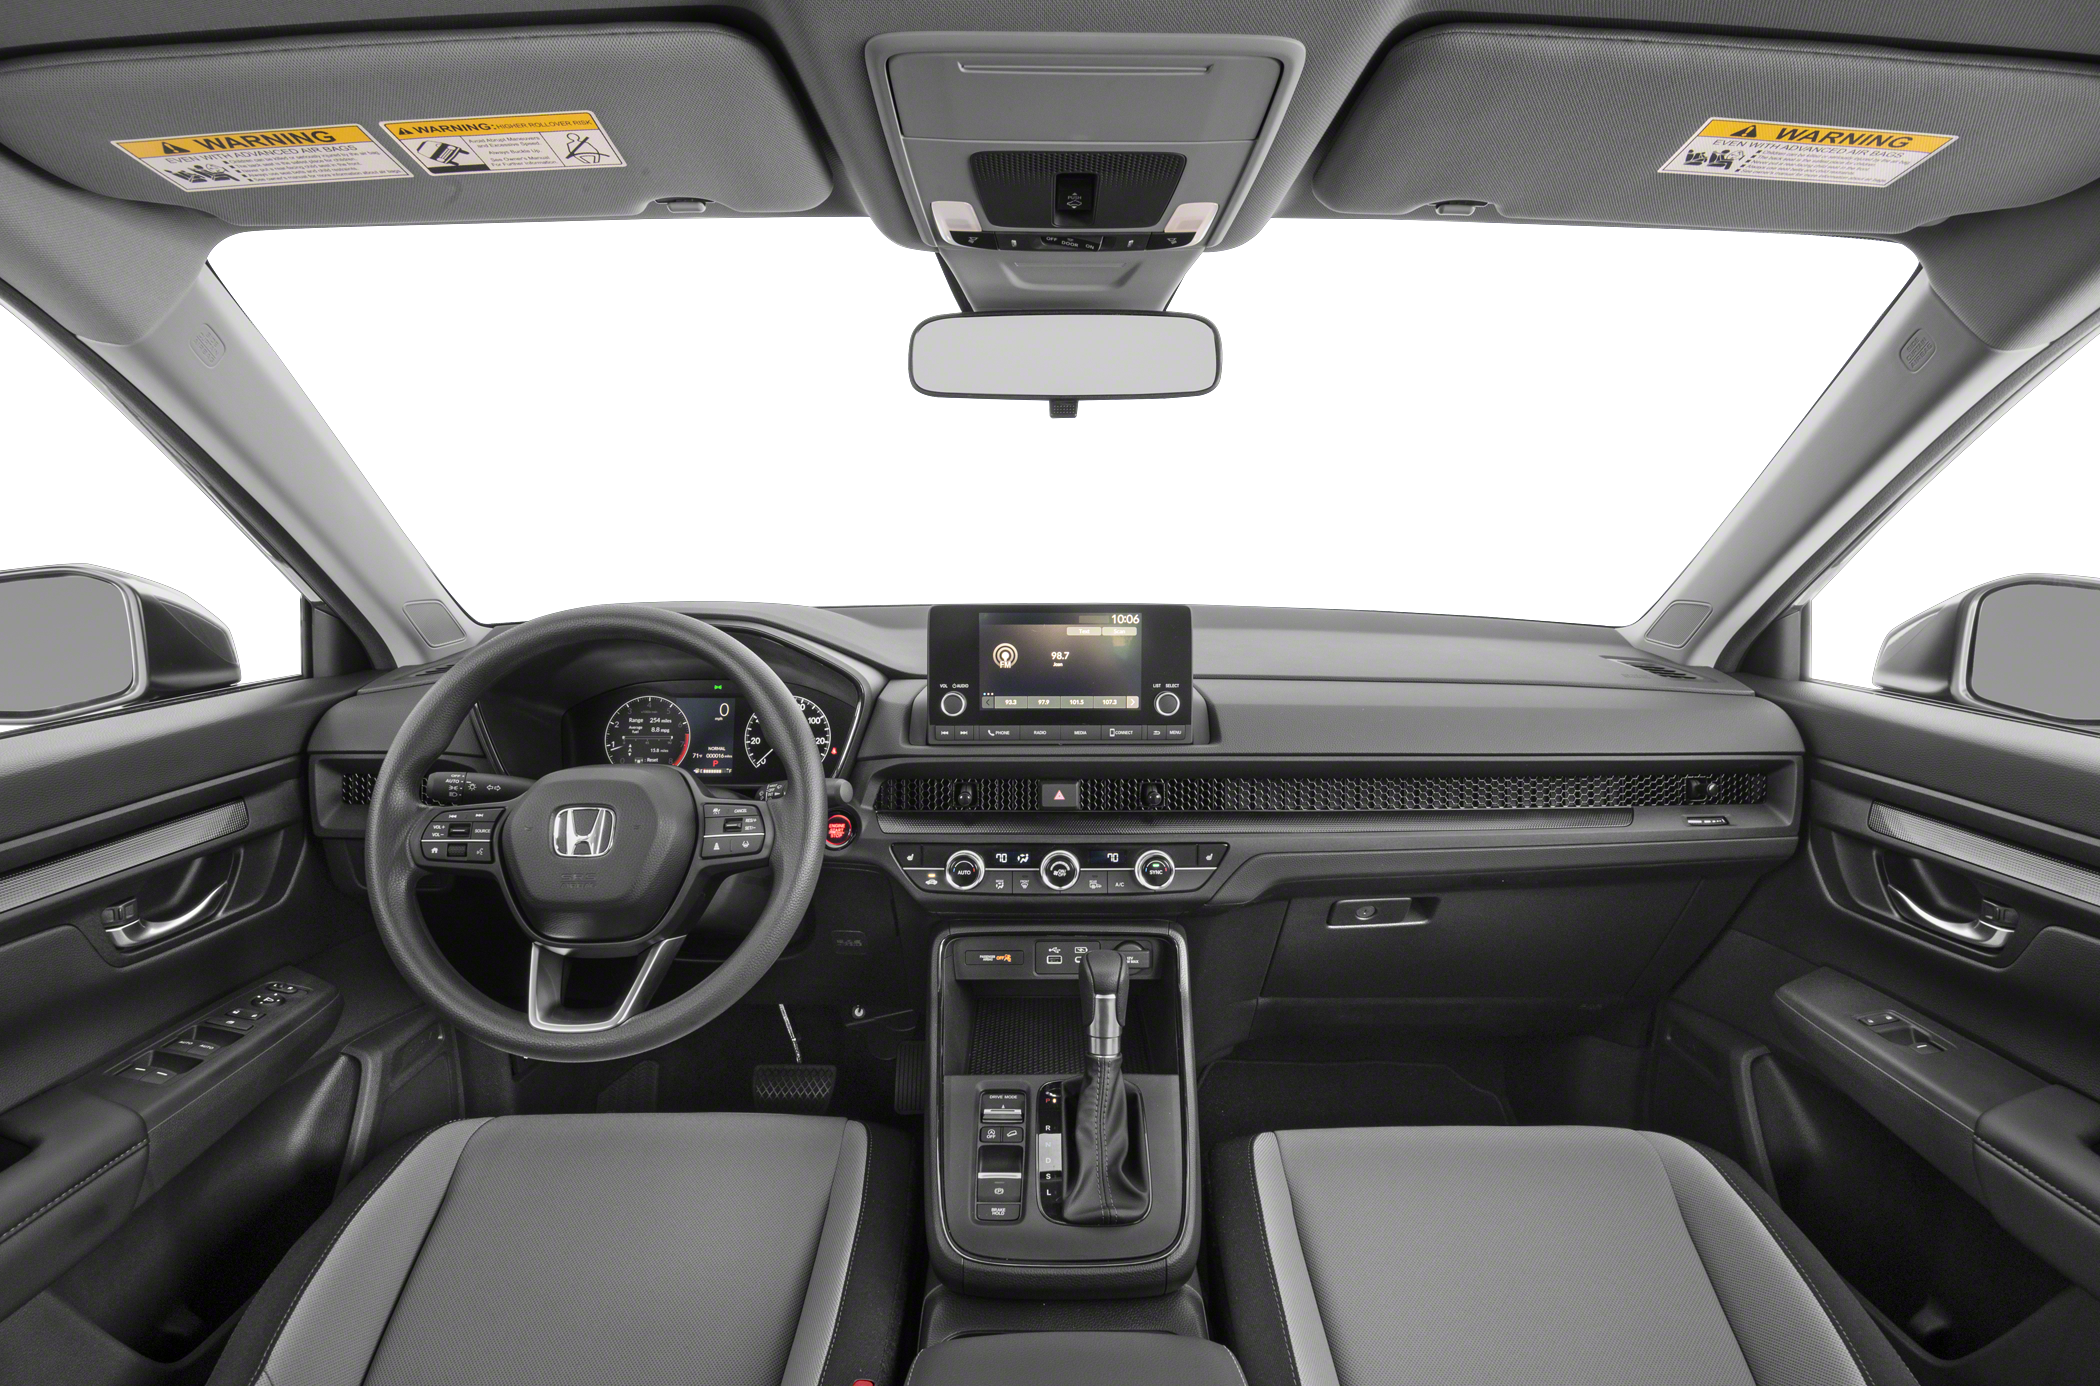 2016 Honda CR-V: 138 Interior Photos